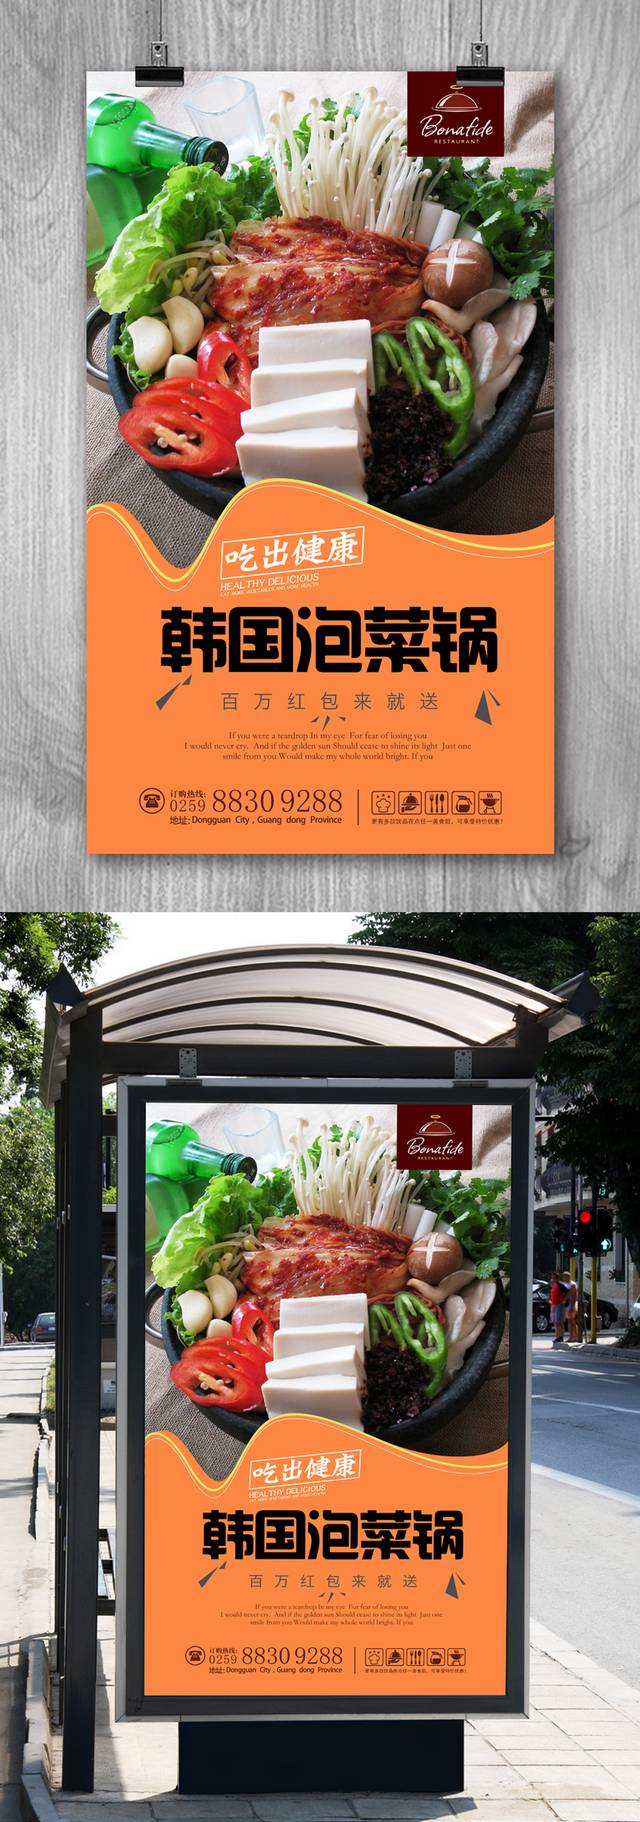 通用韩国泡菜锅宣传海报设计